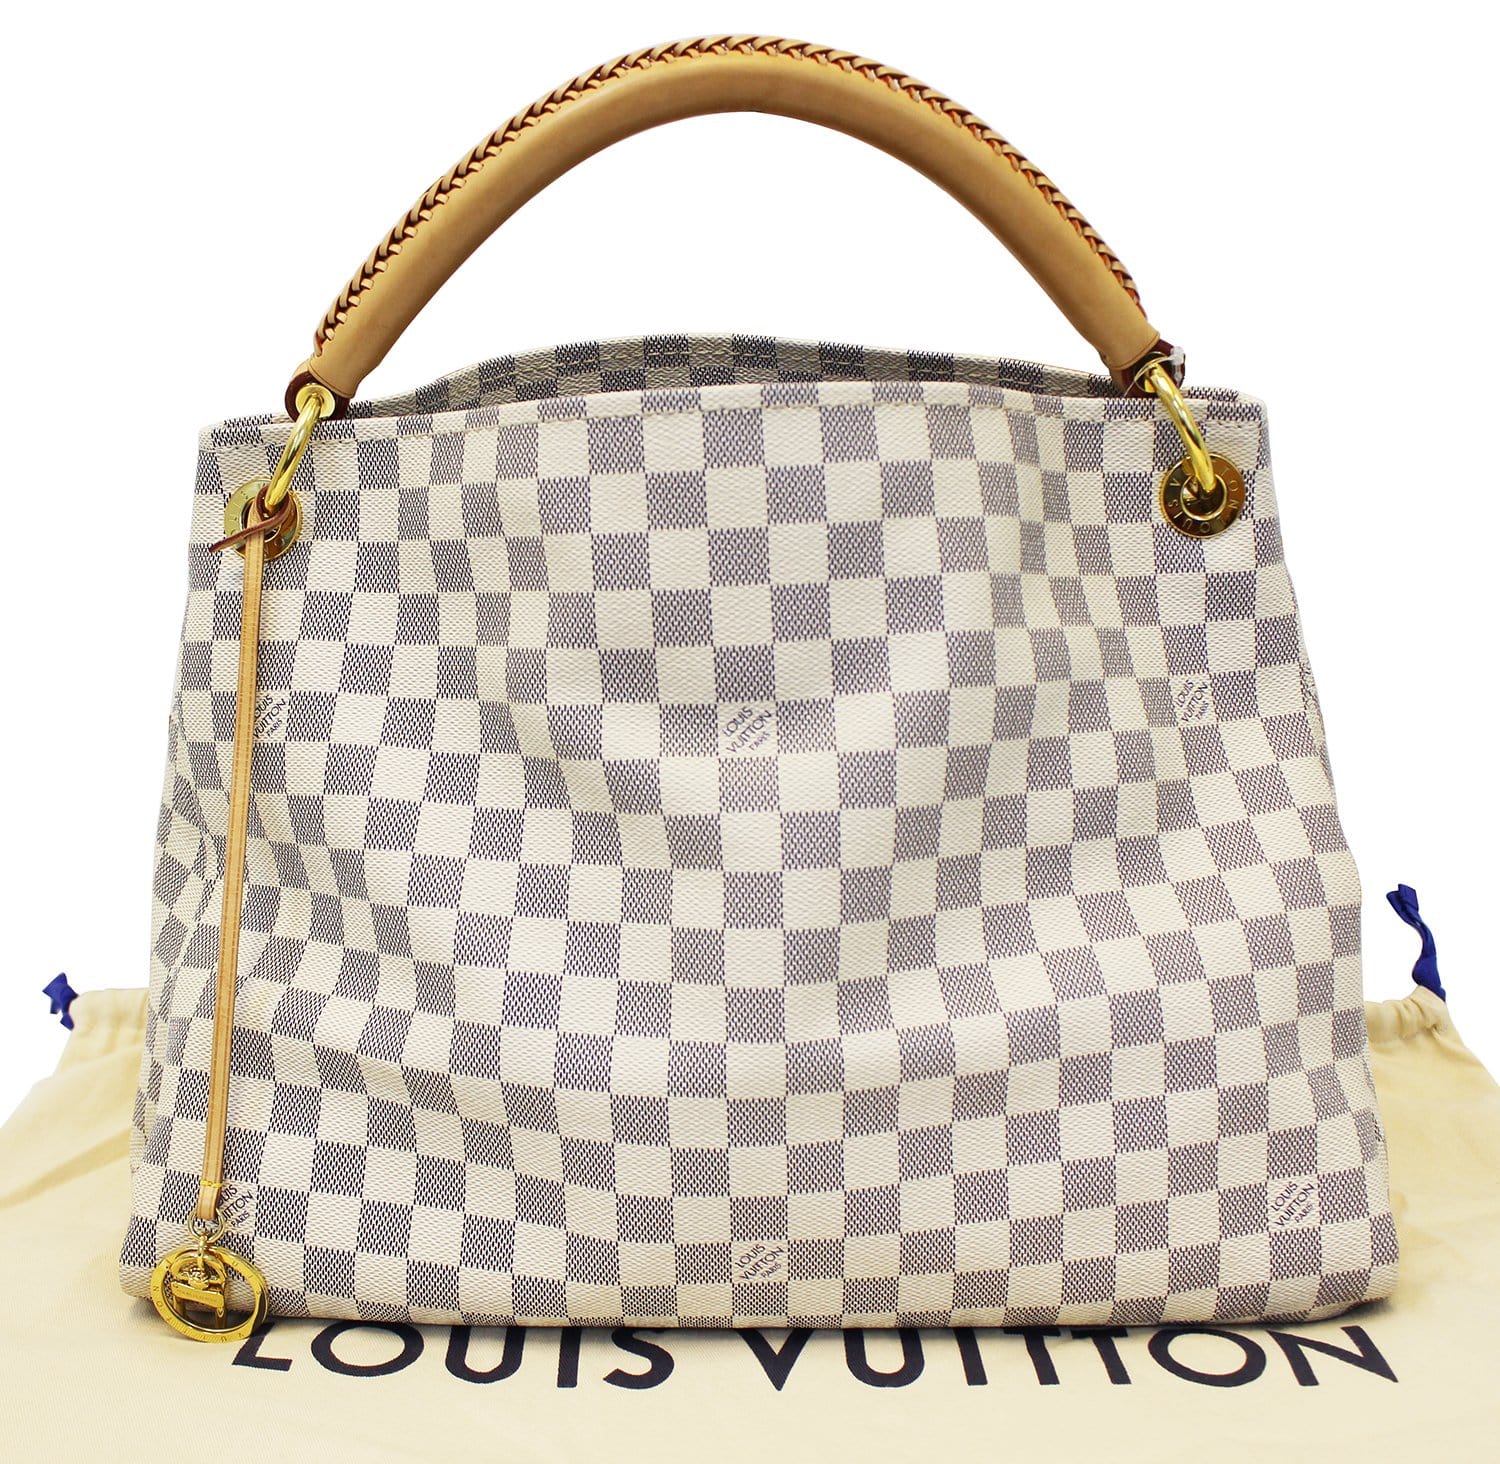 Louis Vuitton Damier Azur for sale